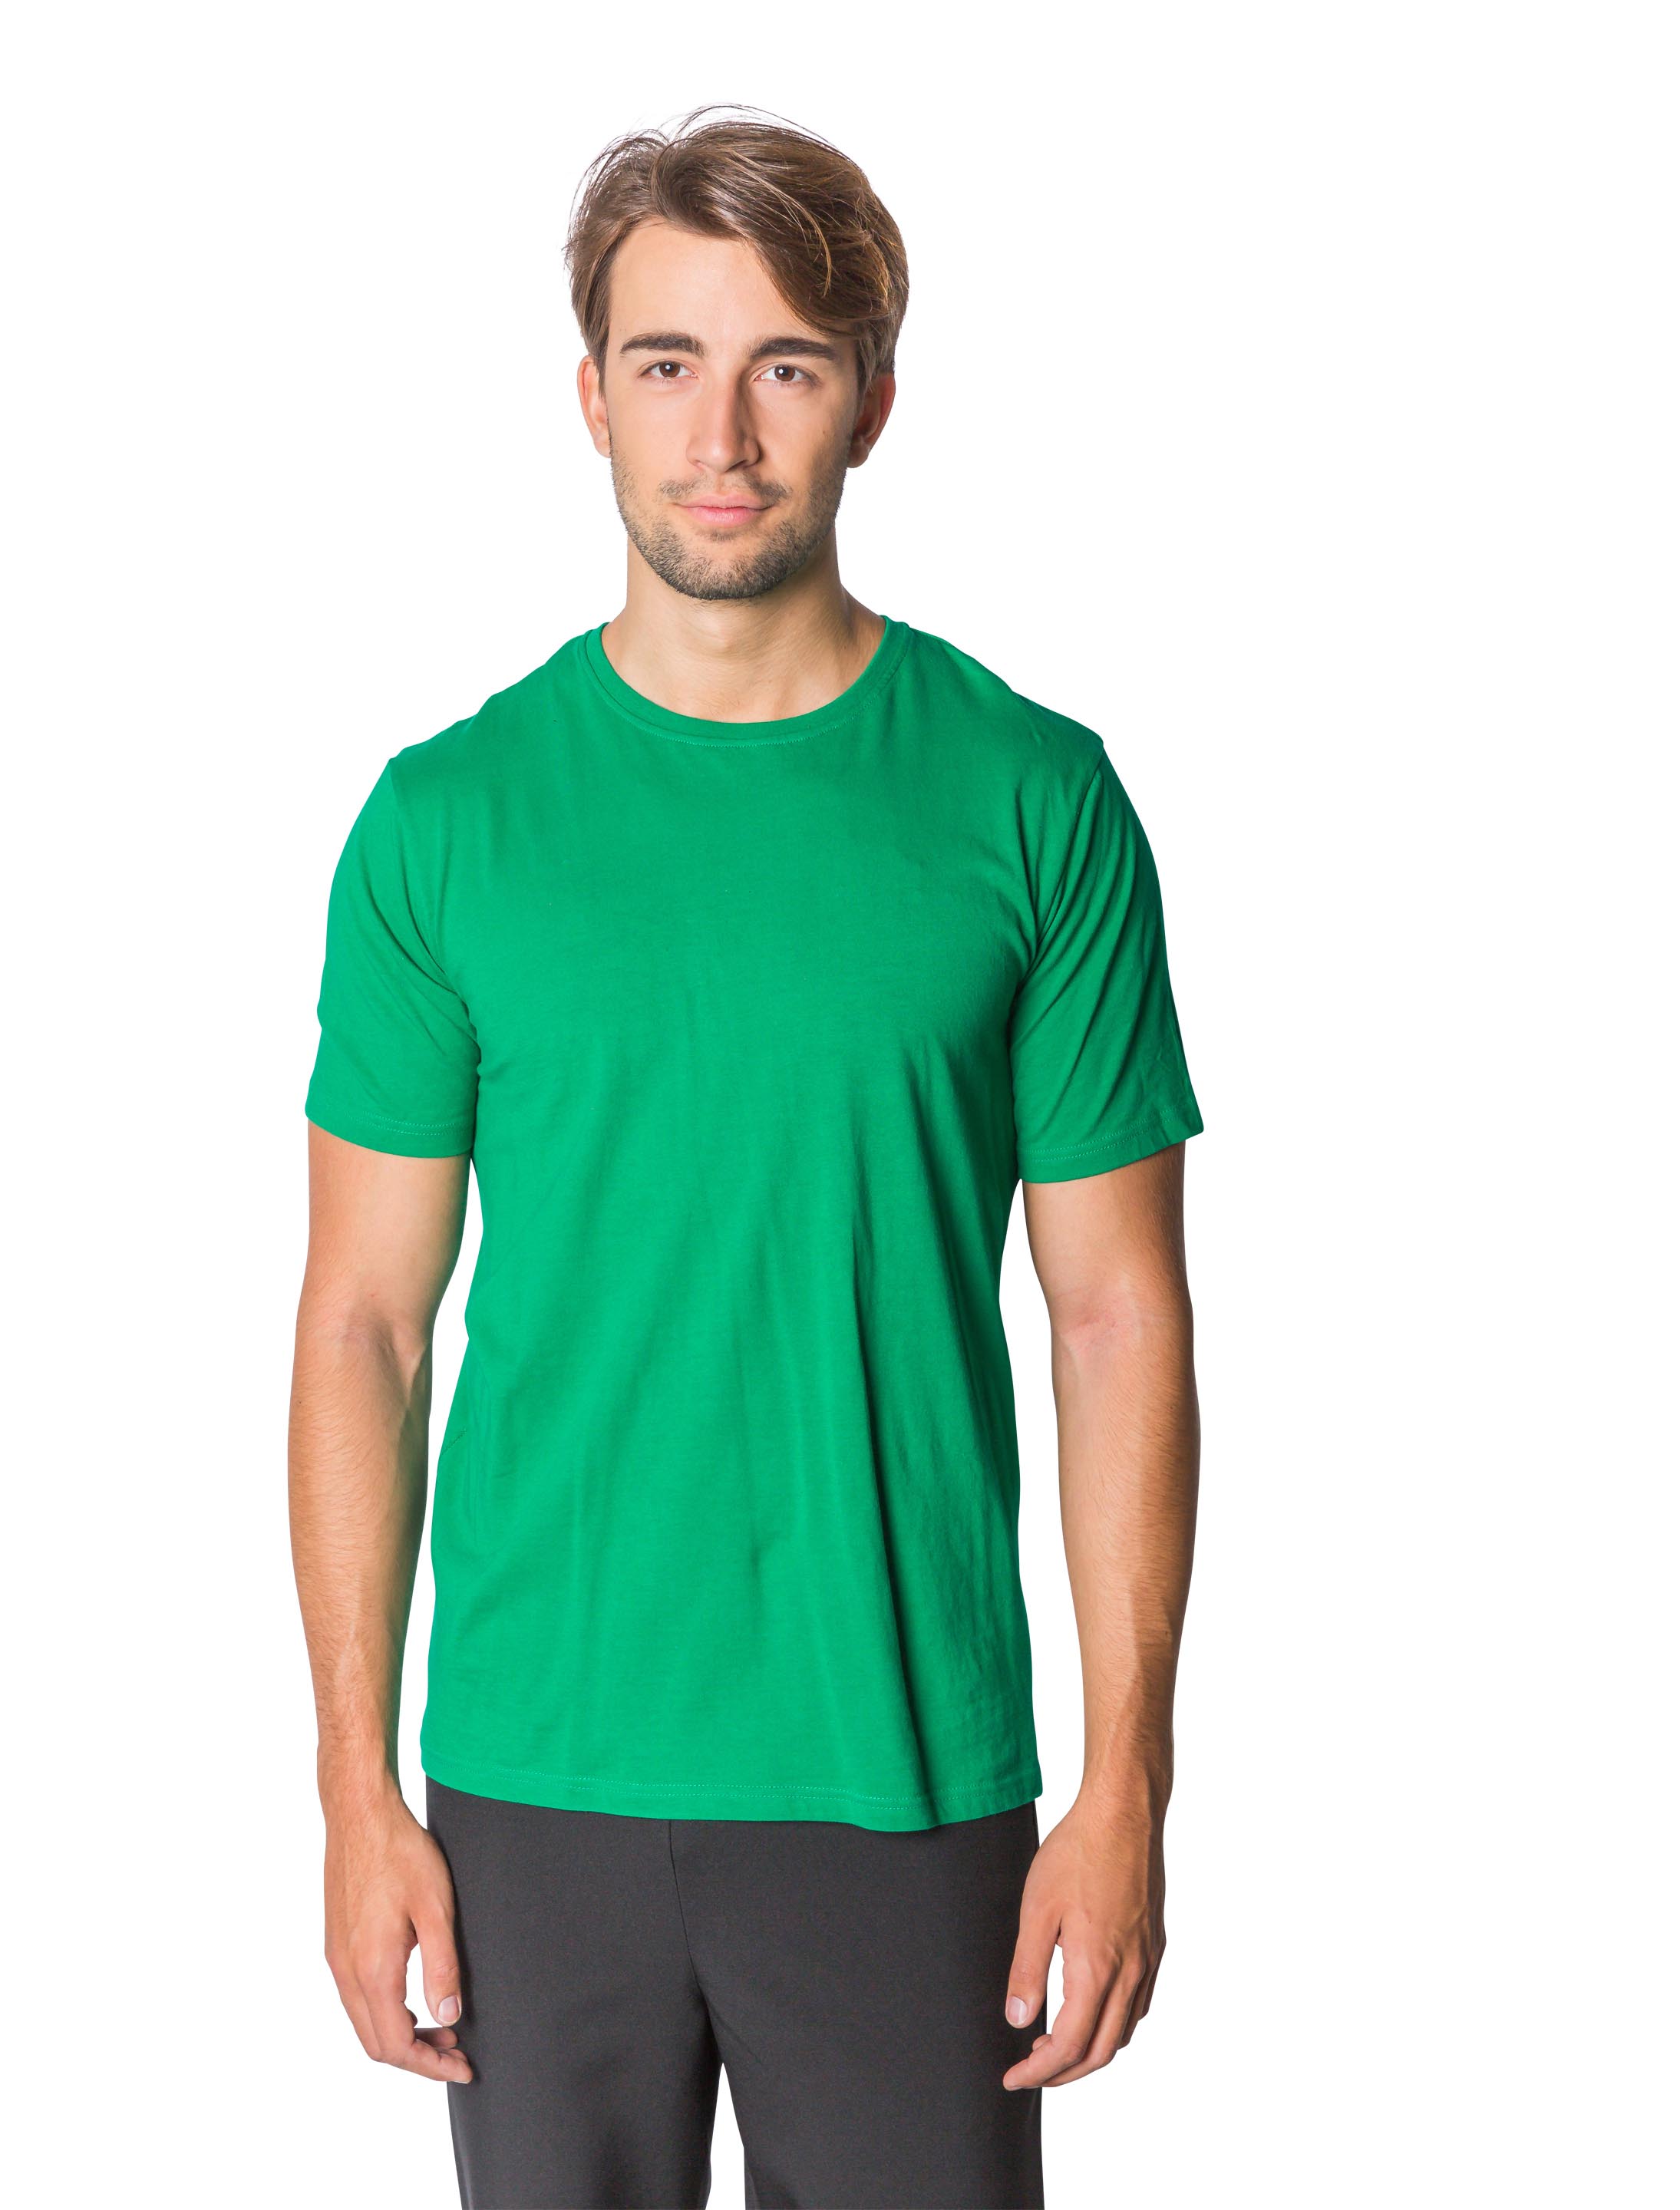 T-Shirt Herren grün 2XL